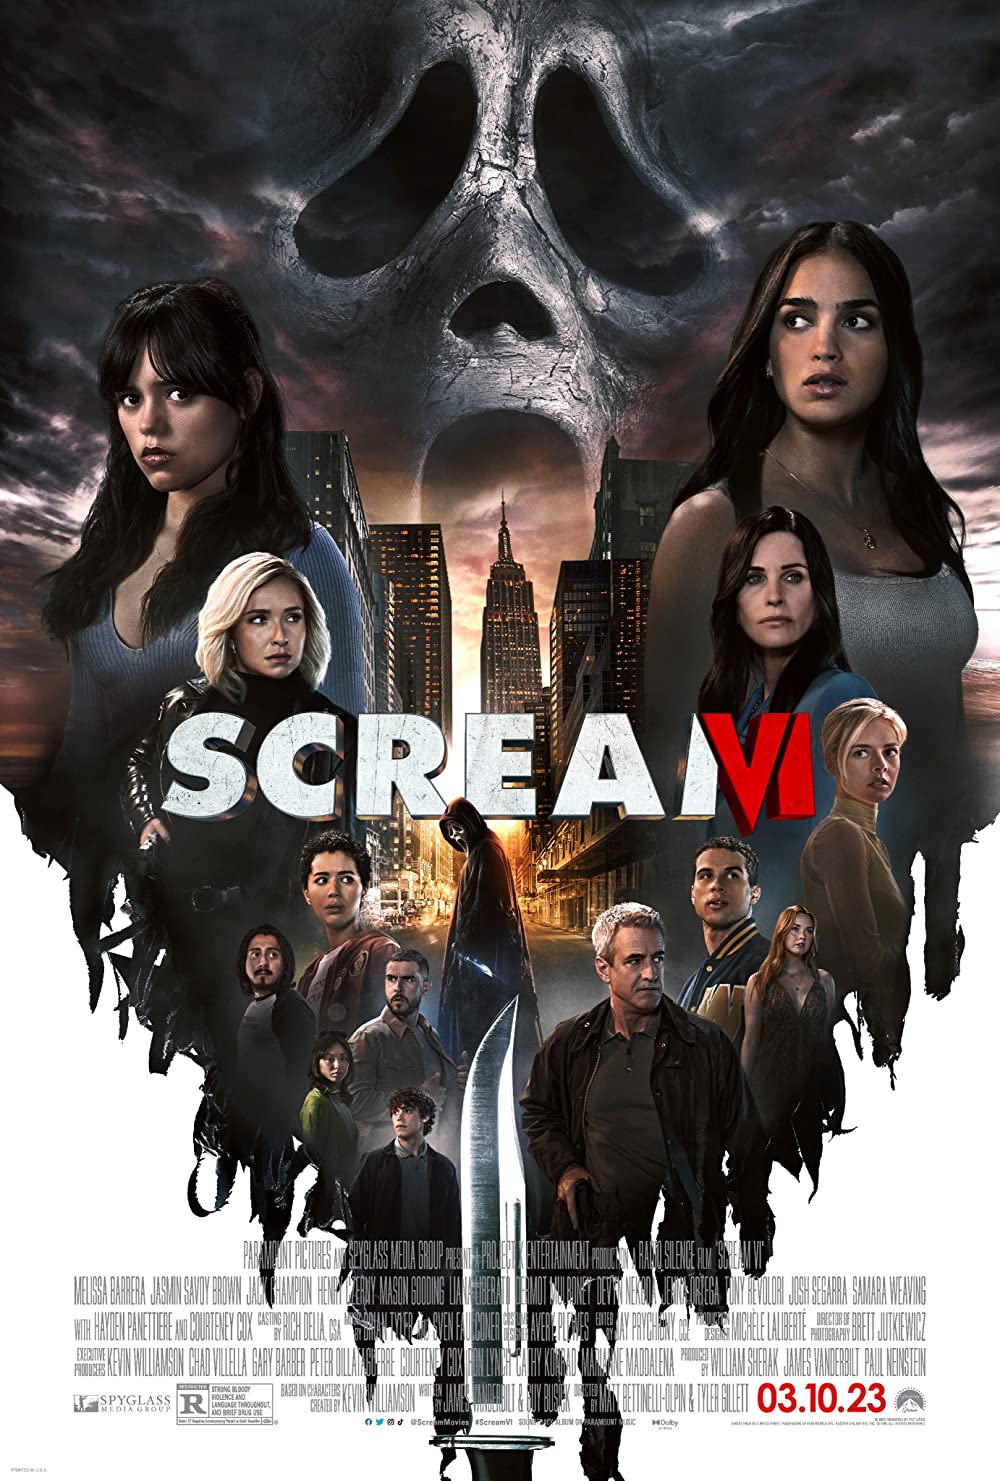 Scream VI Intense Scenes